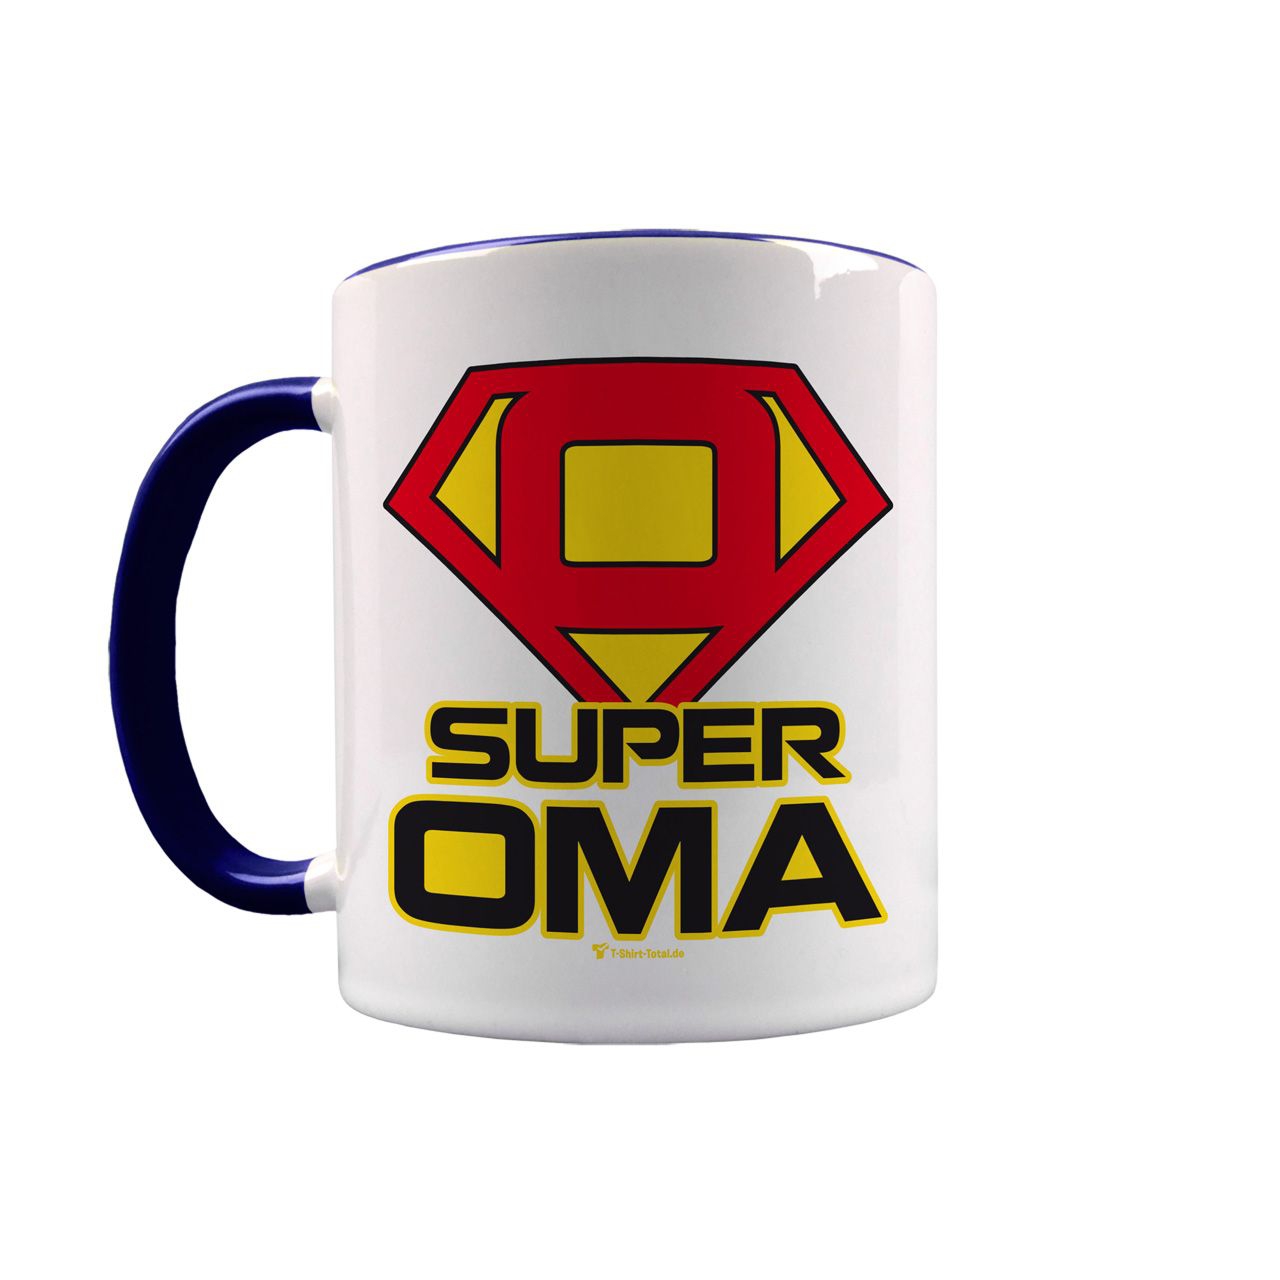 Super Oma Tasse navy / weiß